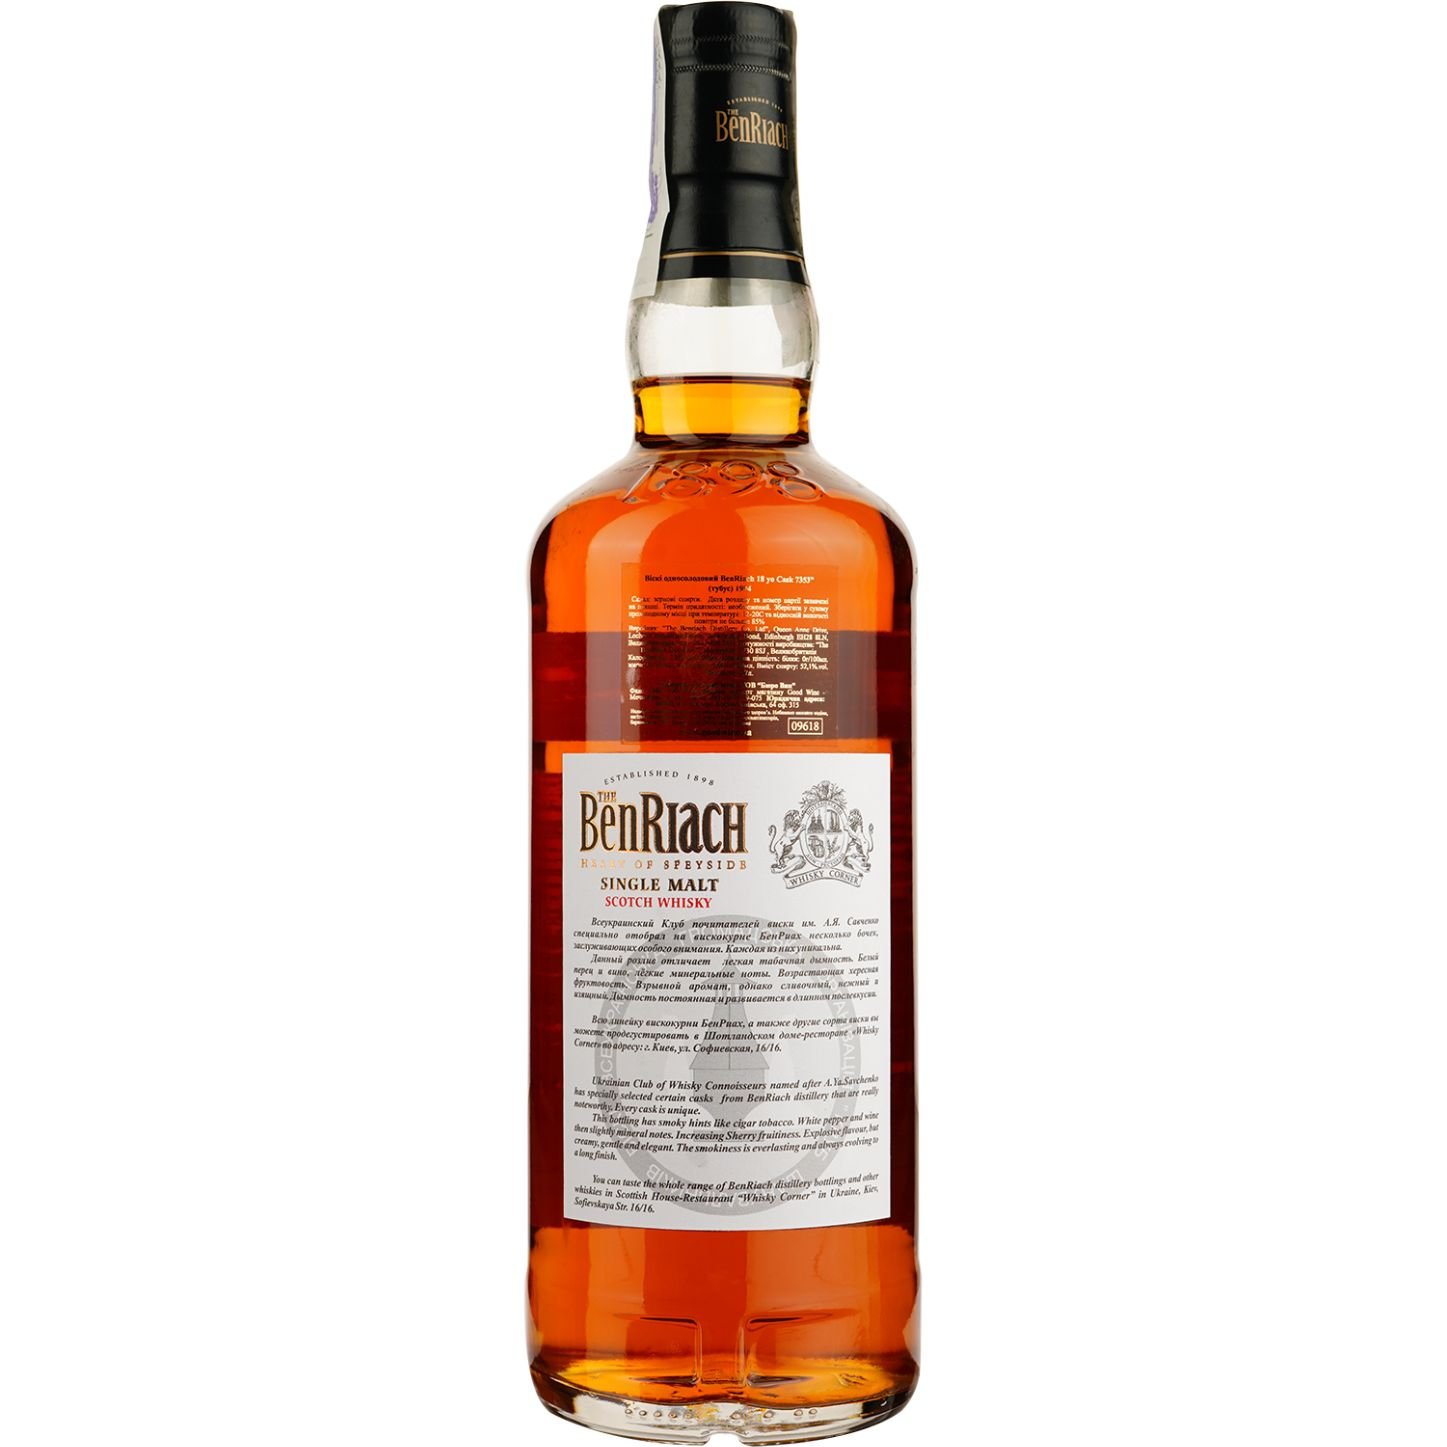 Виски BenRiach 18 Years Old Rum Barrel Cask 1644 Single Malt Scotch Whisky, в подарочной упаковке, 57,6%, 0,7 л - фото 4